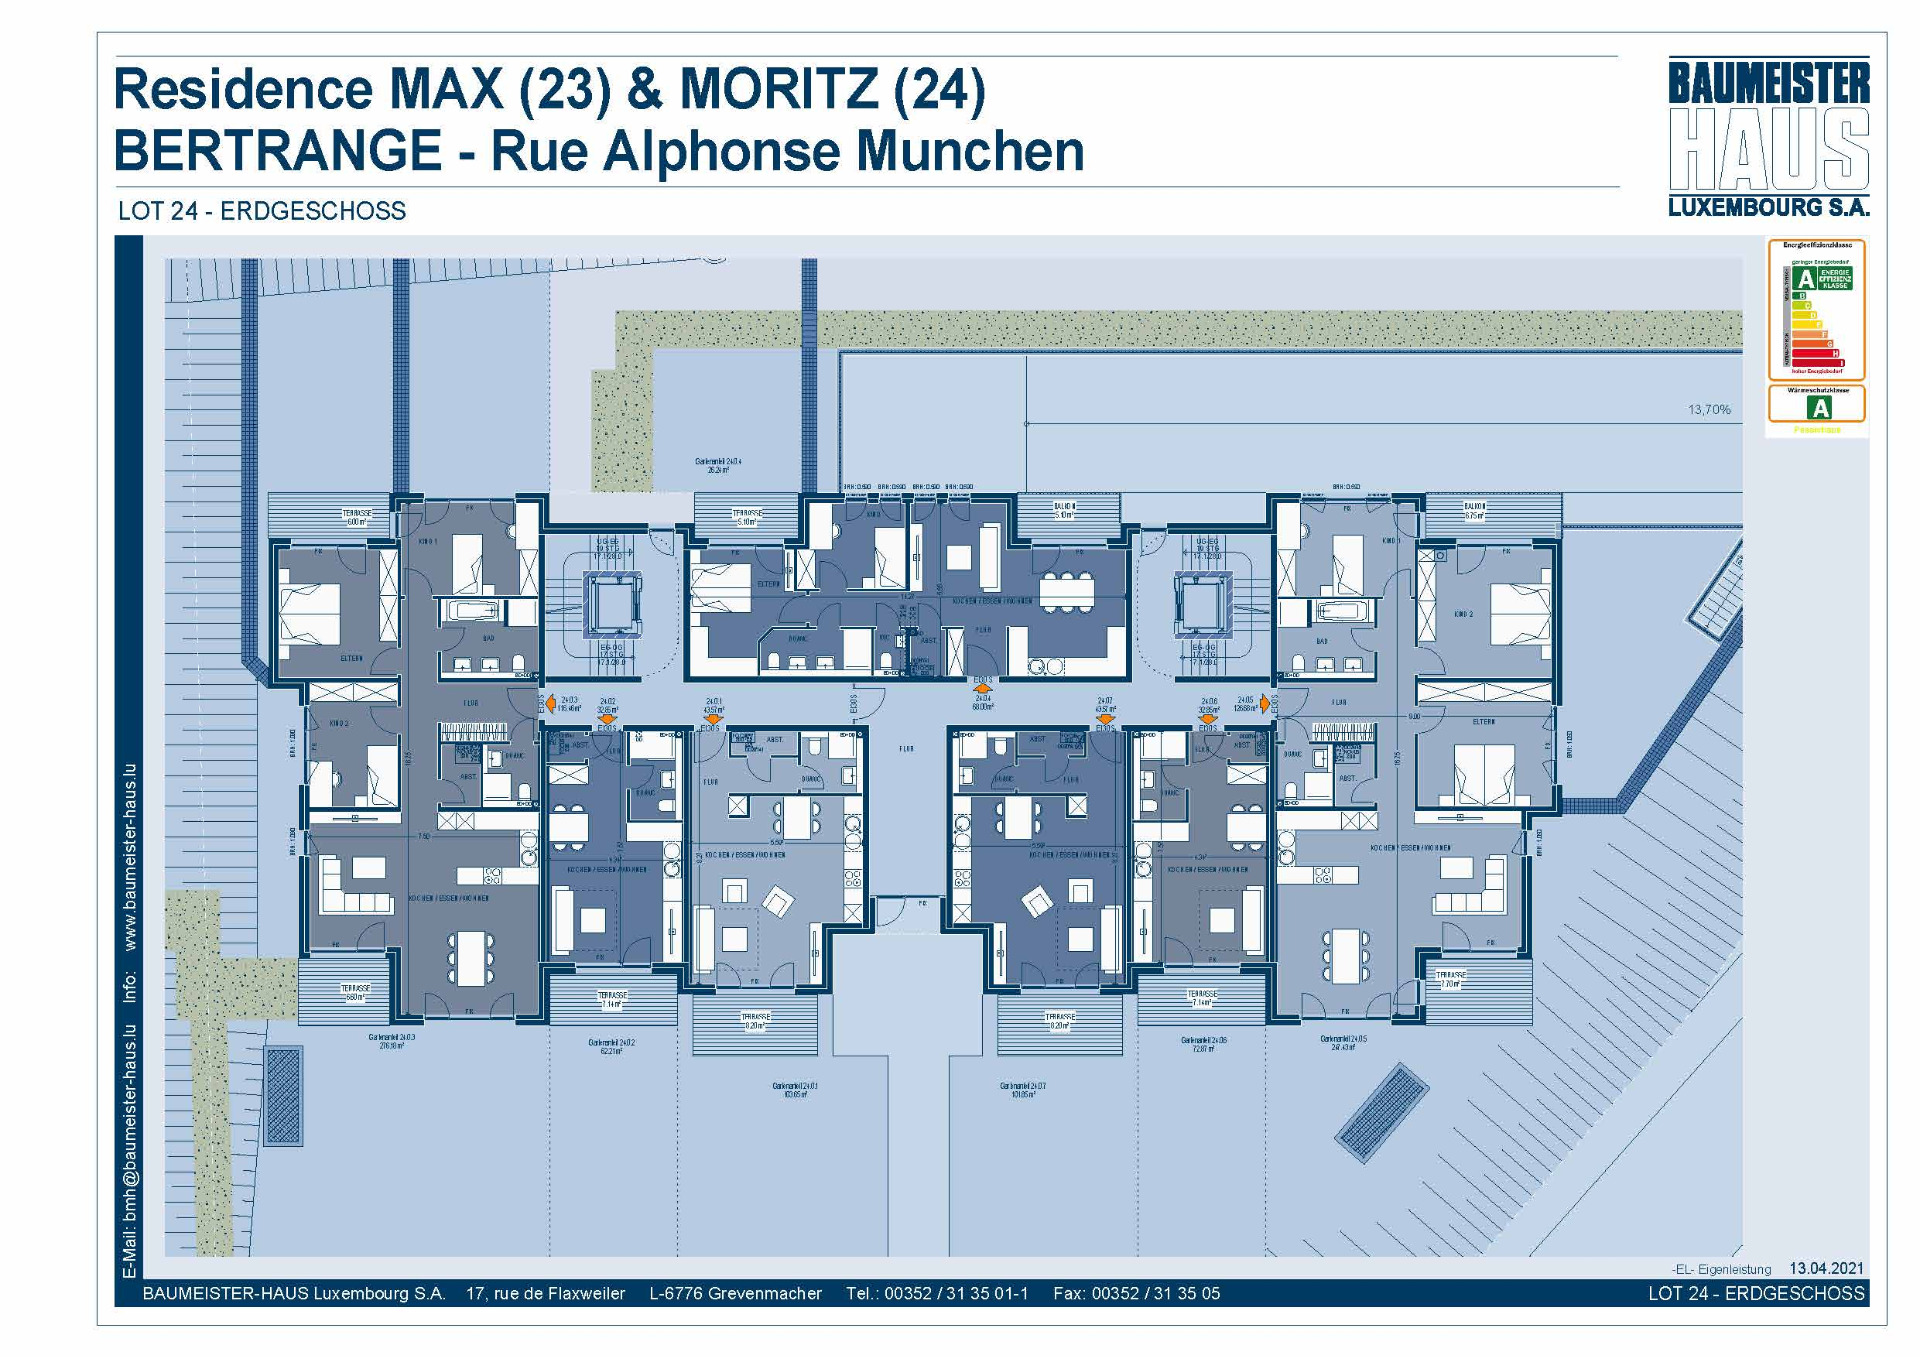 Residenz Moritz 24.0.2